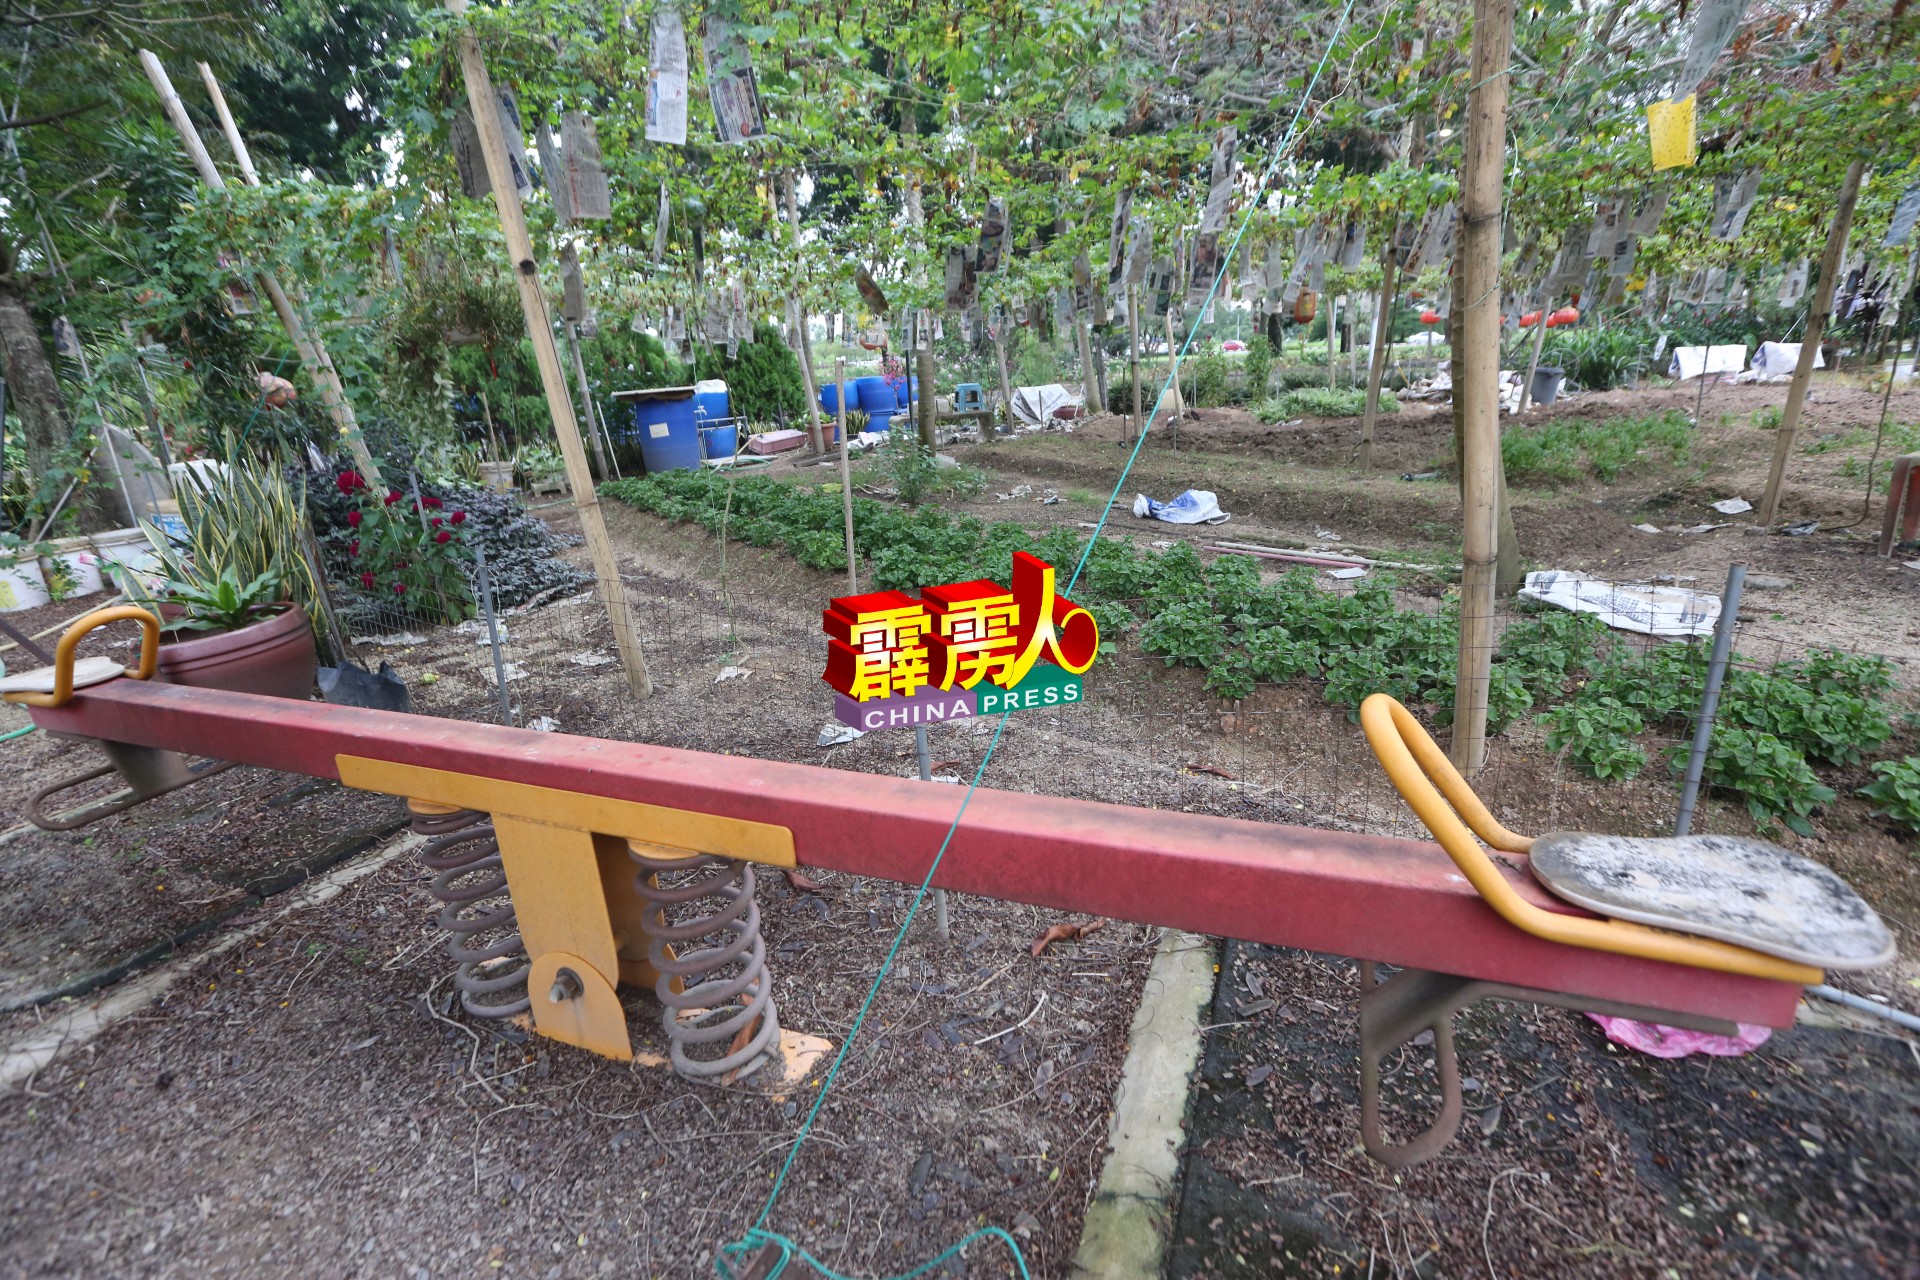 这个跷跷板及滑板也在蔬果园中，唯如今已无法使用。